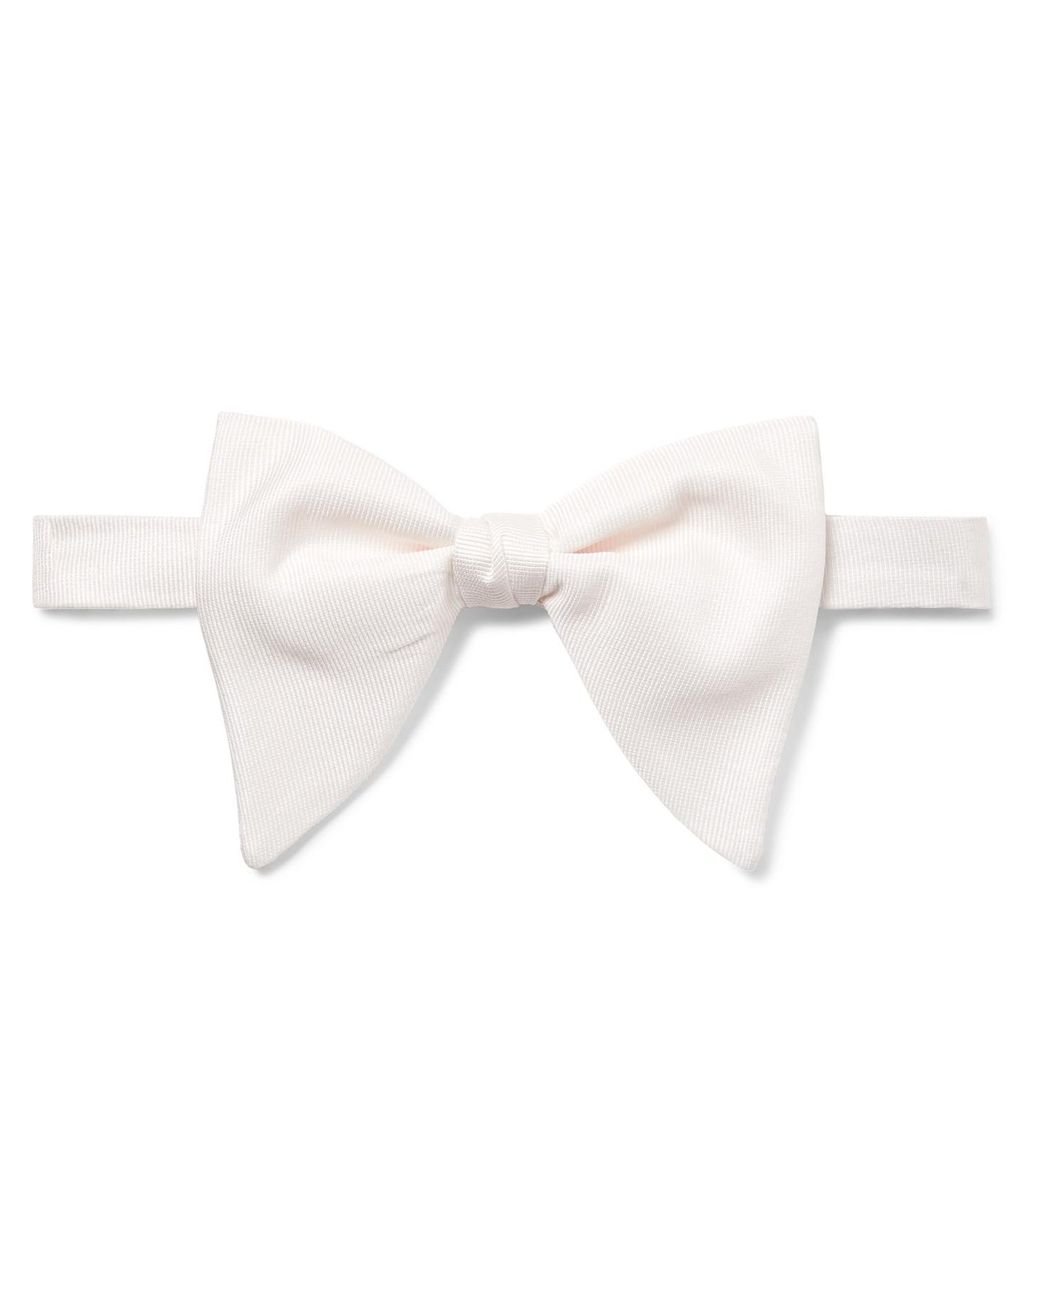 Gucci Pre-tied Silk-grosgrain Bow Tie in White for Men